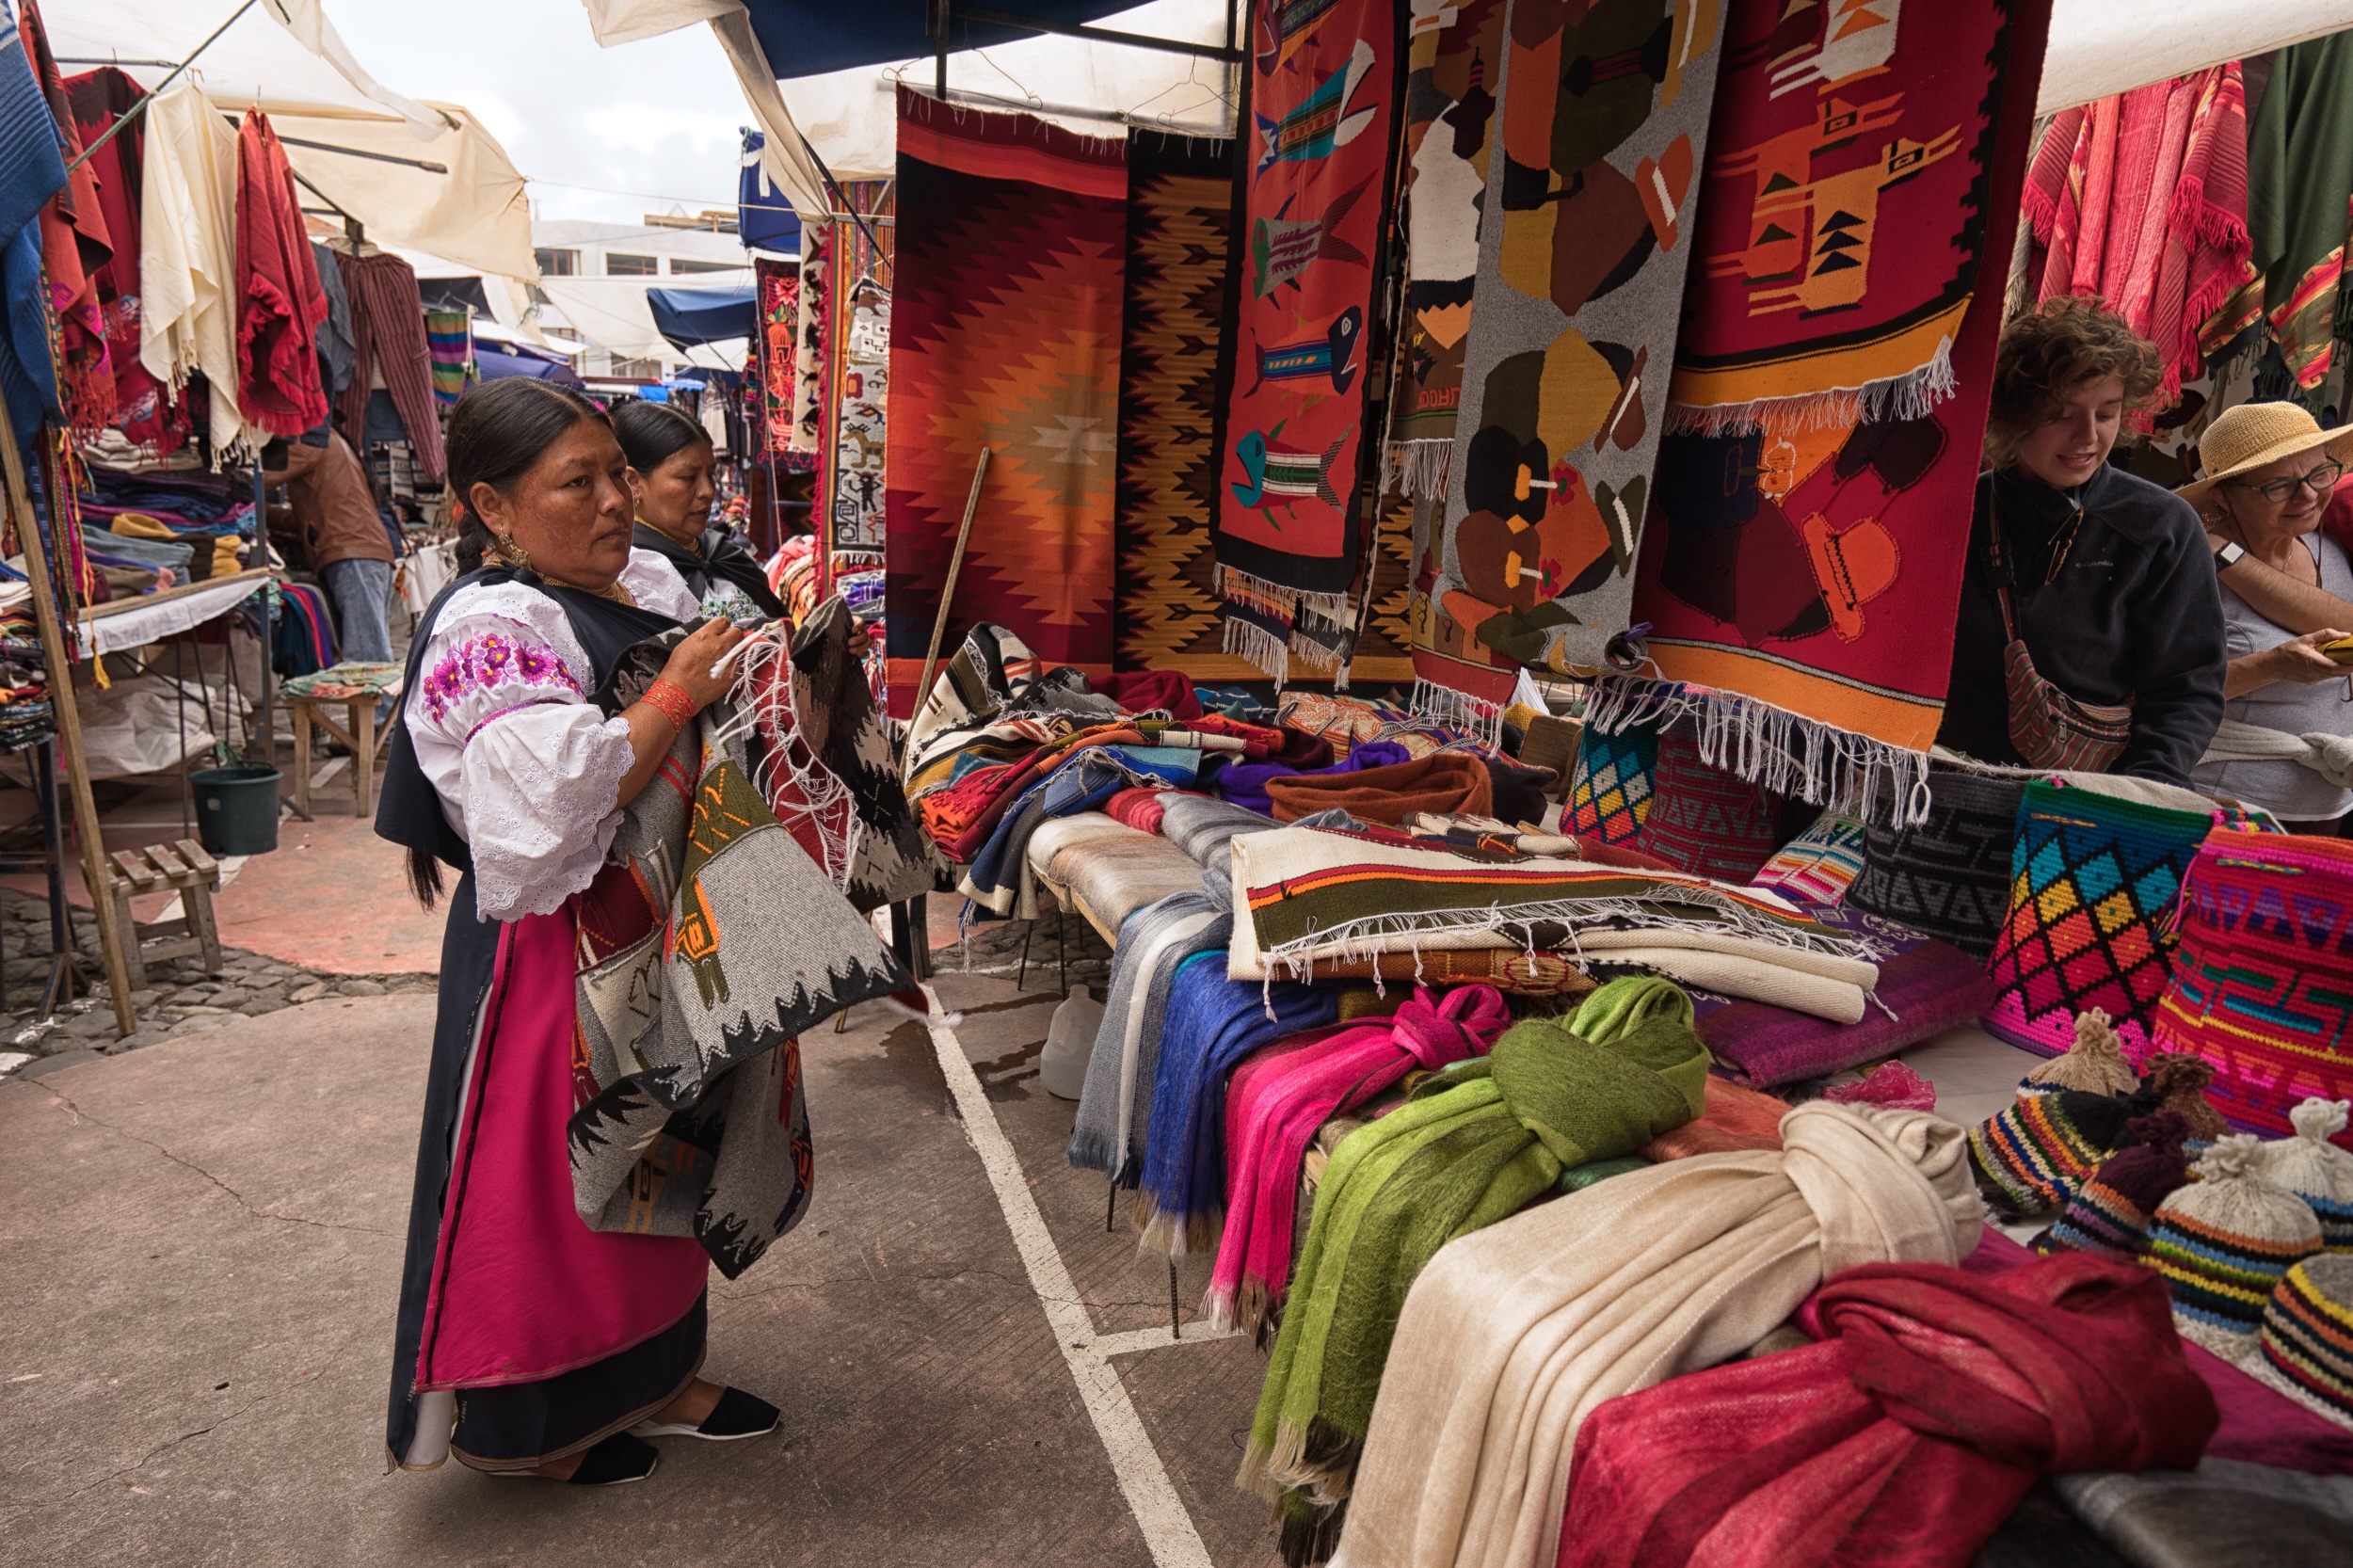 2) Otavalo Indigenous Market